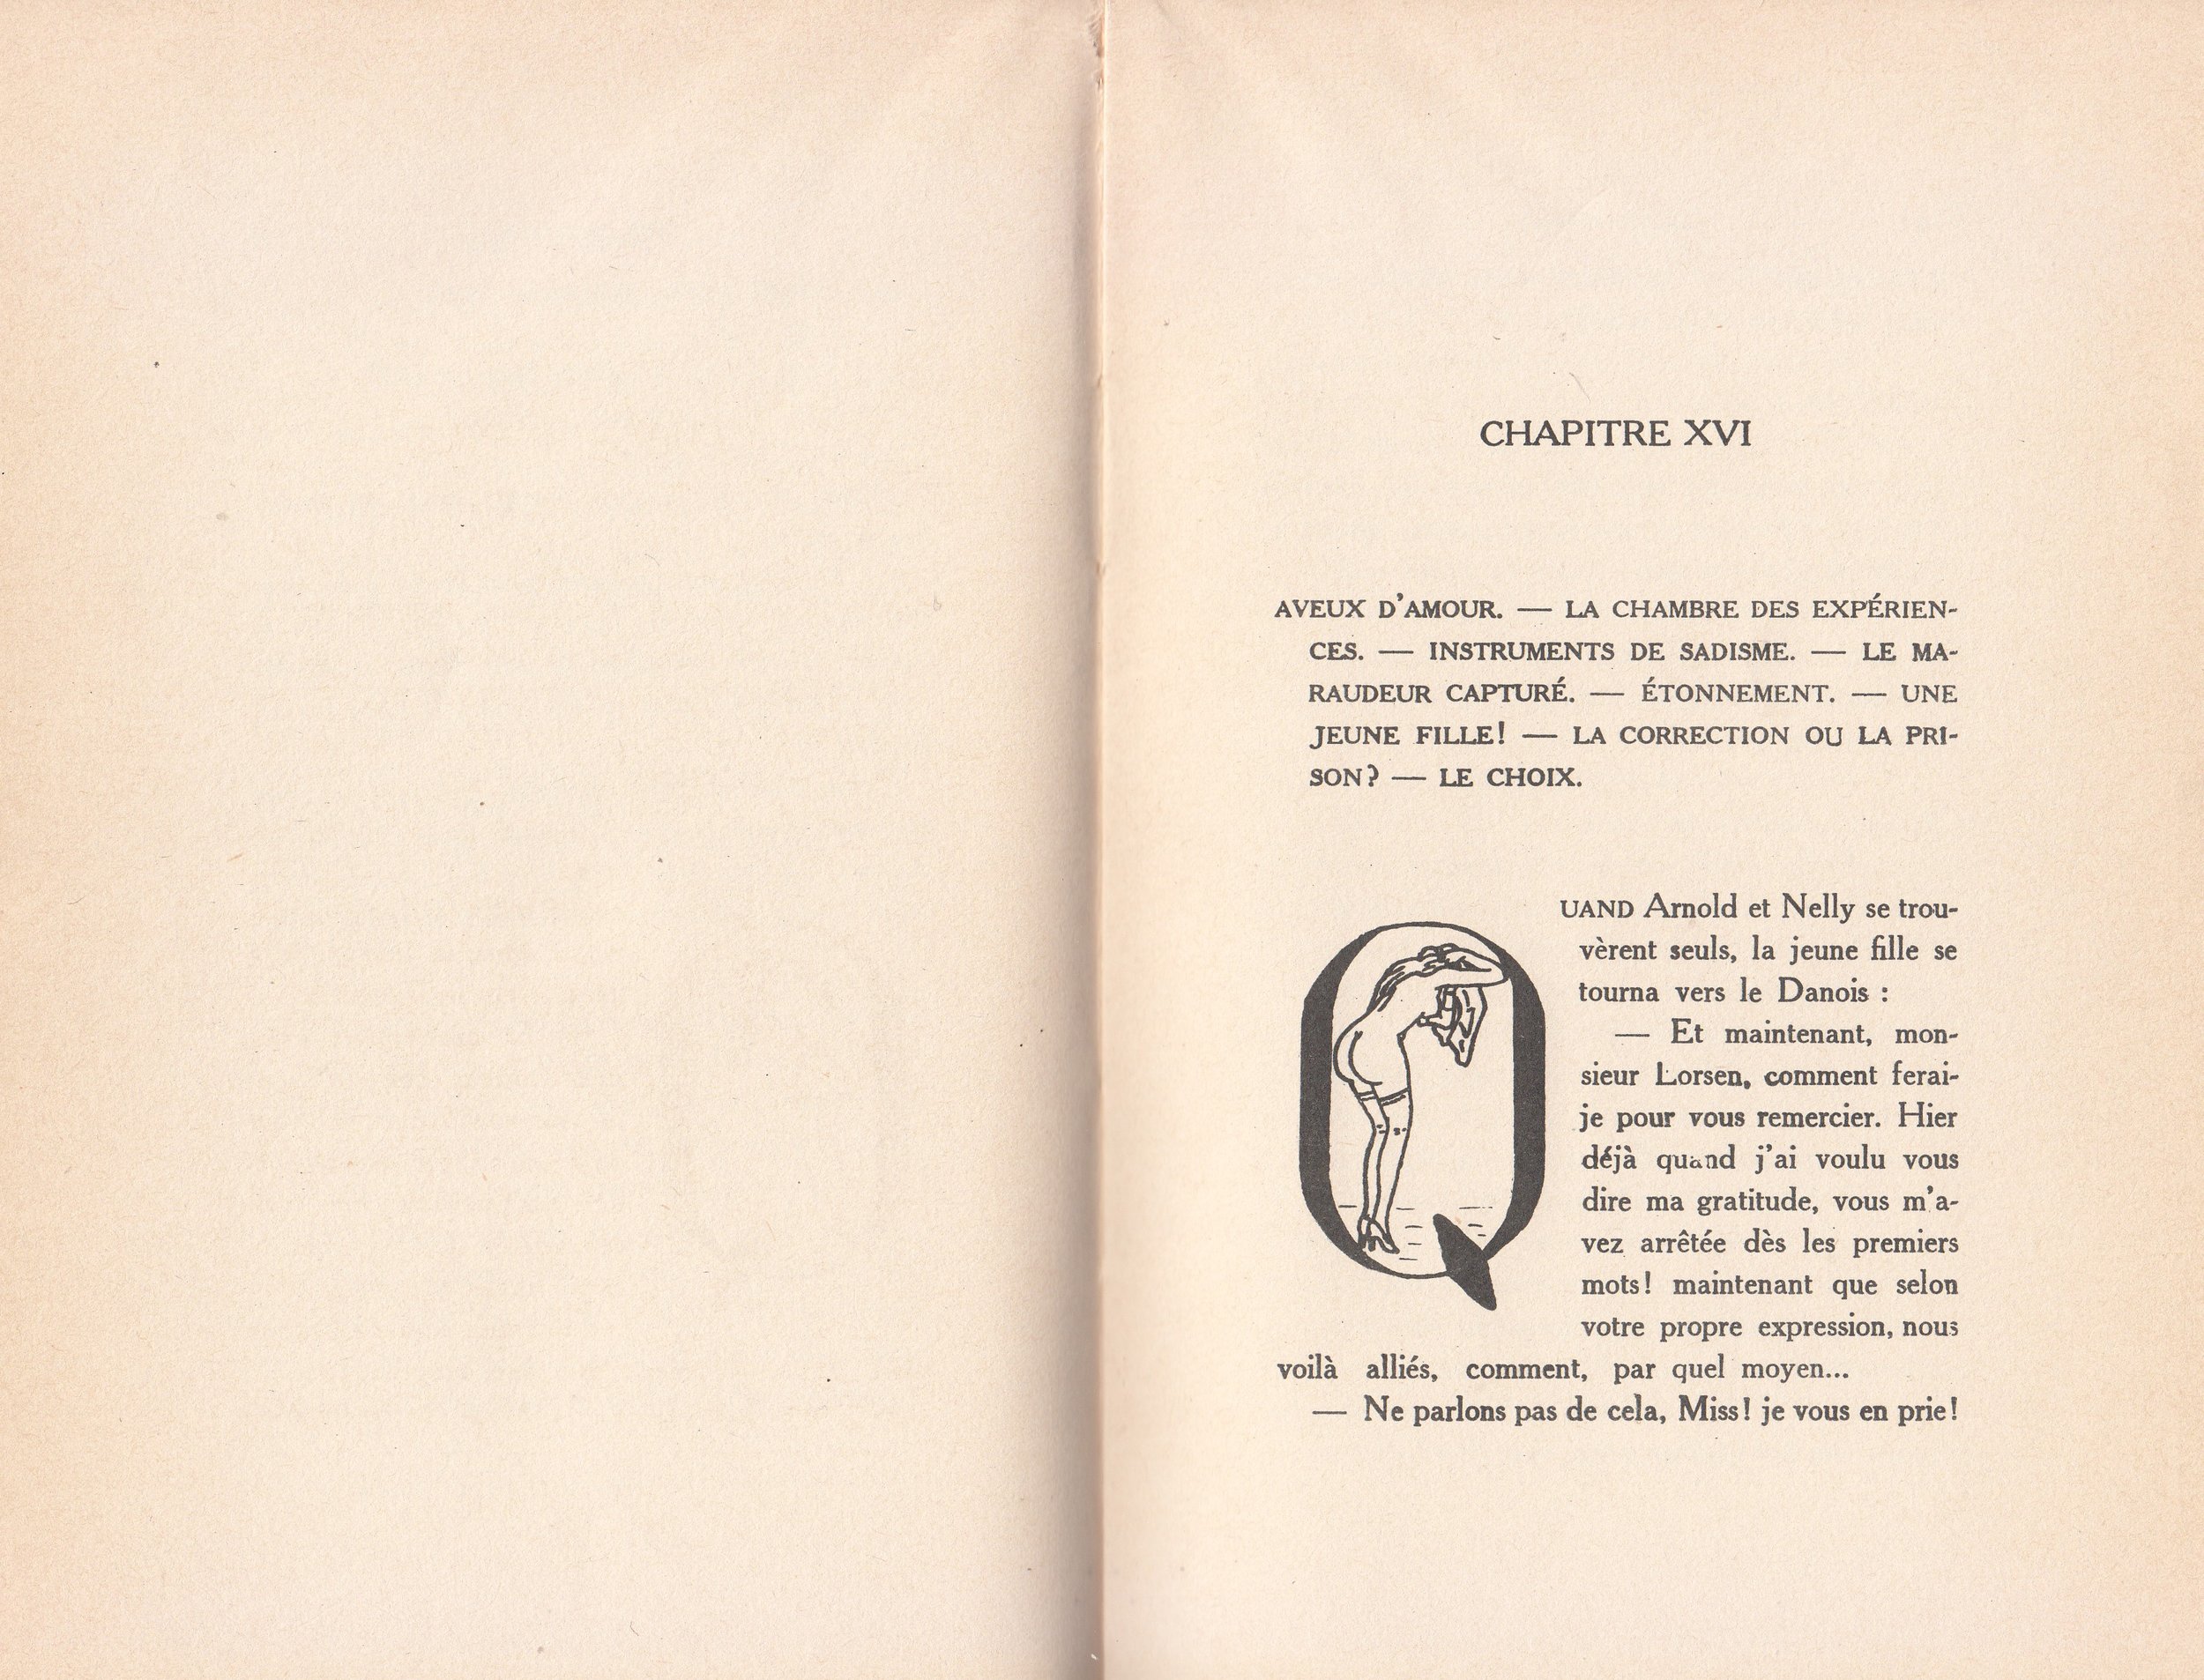 Novel Georges Topfer, 'Miss Cravache ou Les Vierges Esclaves' Spanking Illustrations_22.jpg